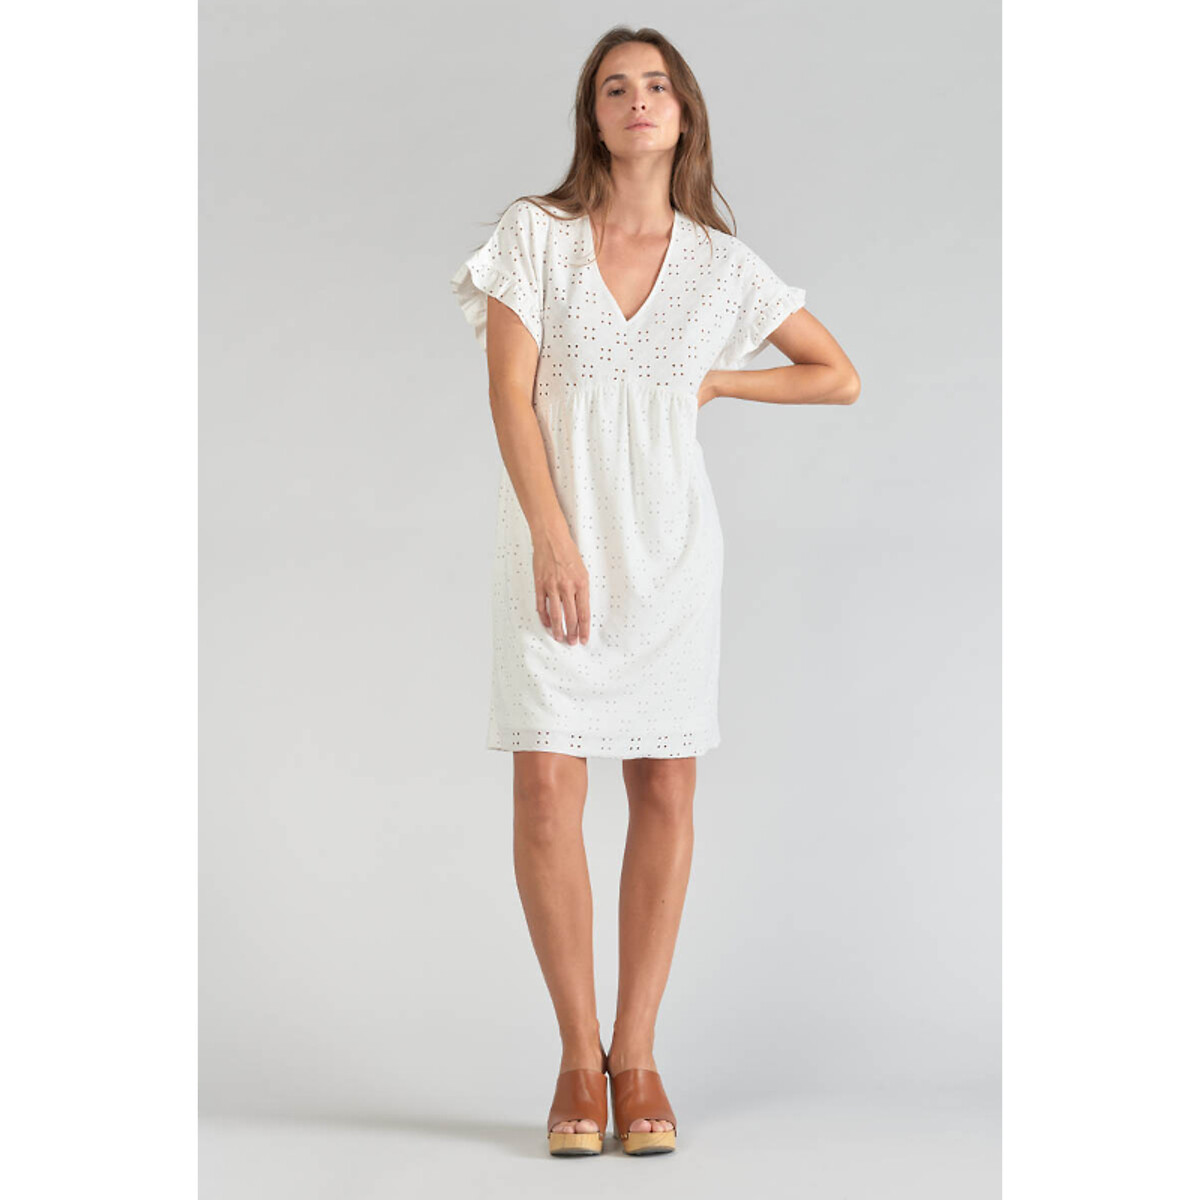 Платье короткое с вышивкой короткие рукава M белый платье свитшот короткое напускные рукава с вышивкой m бежевый